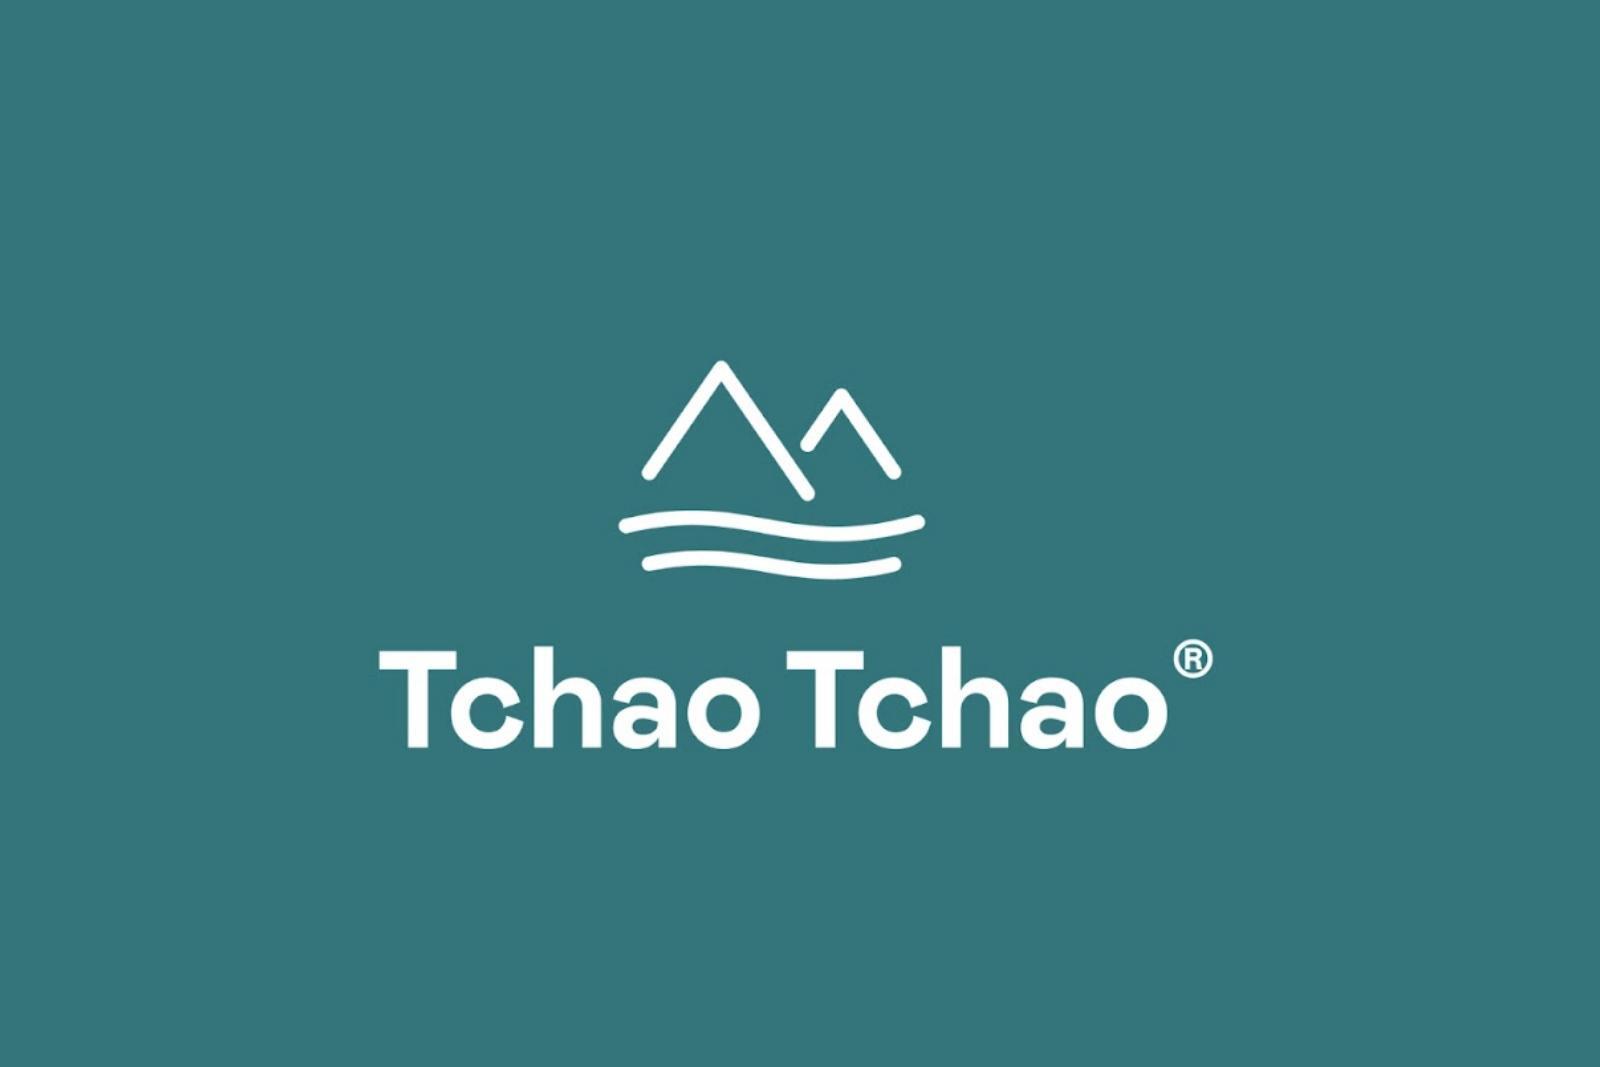 Logo Tchao Tchao client Lucy&Co. cabinet de recrutement et de conseil RH